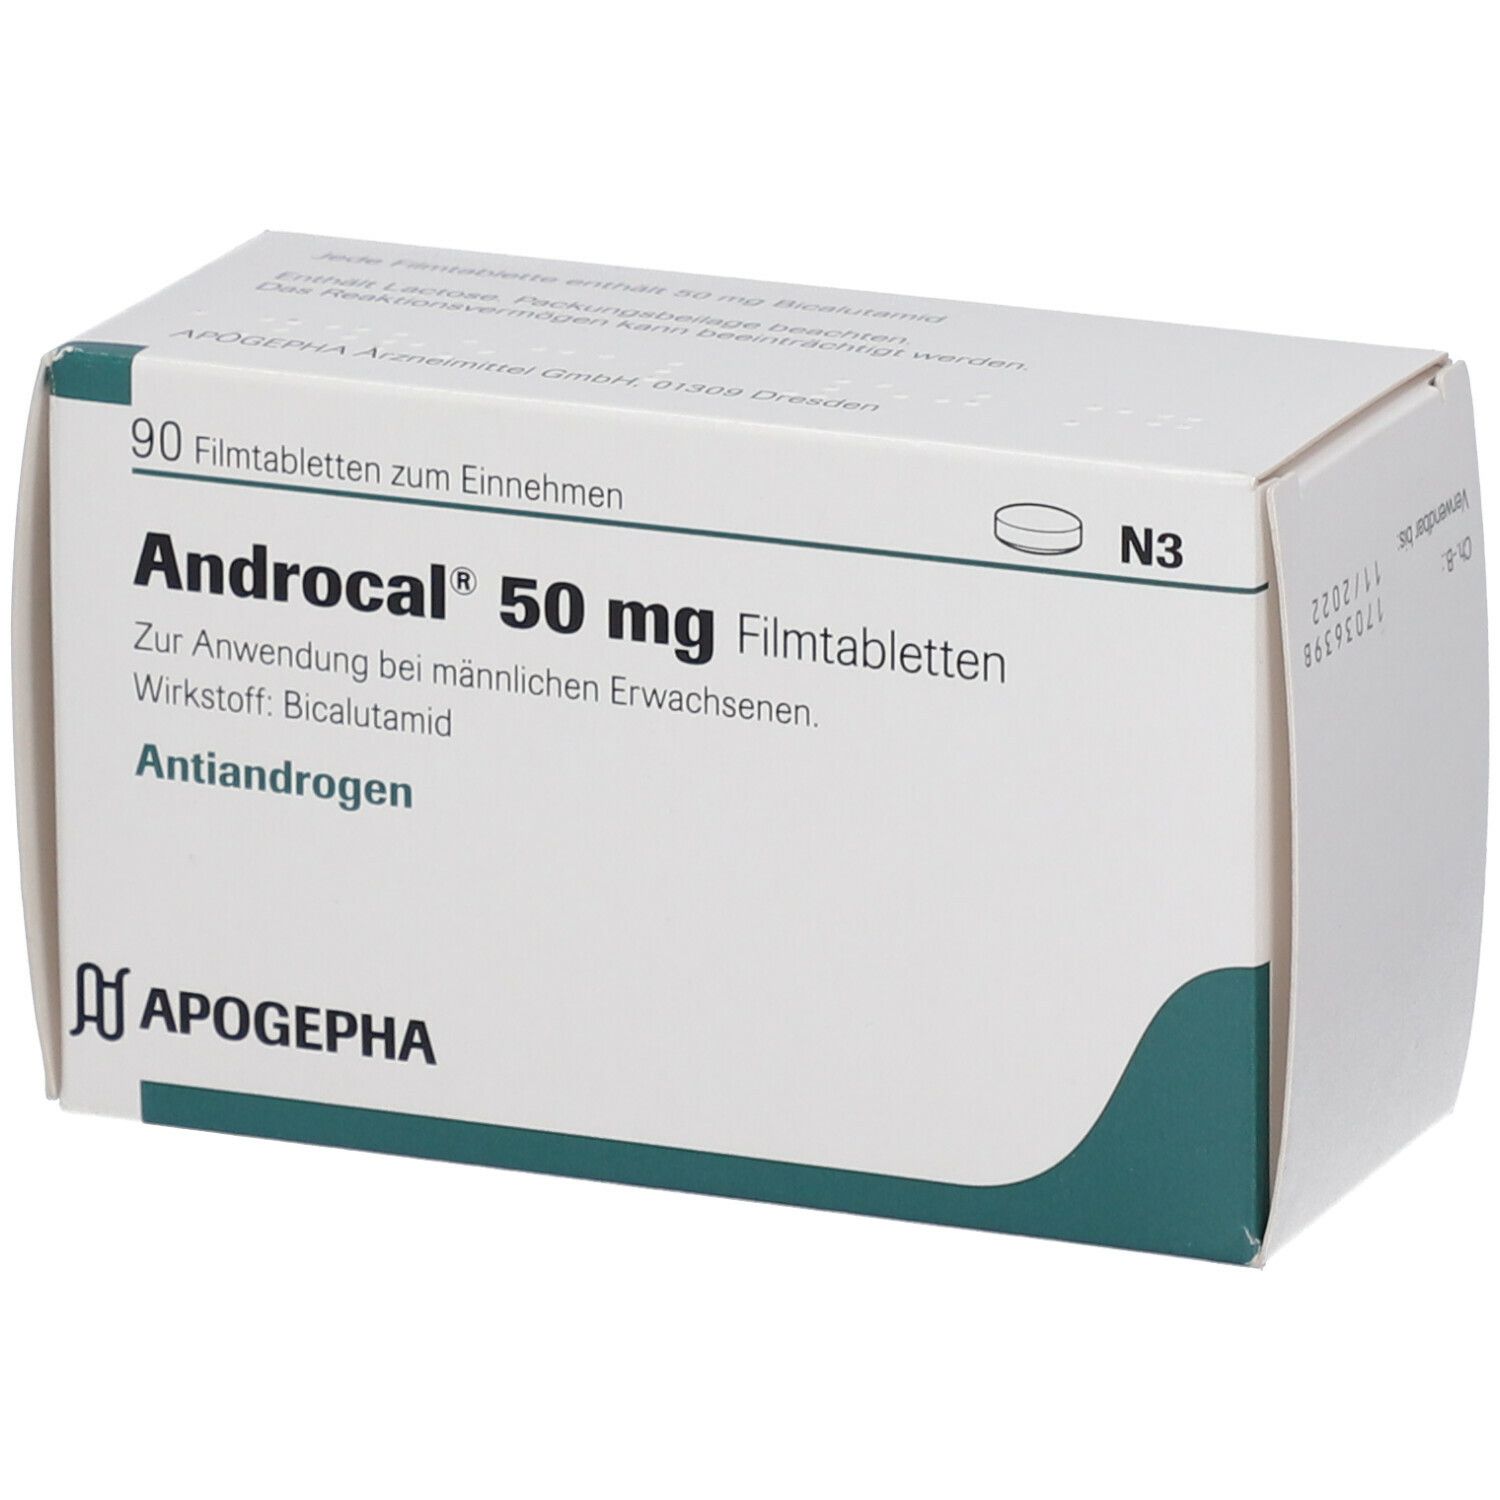 Androcal® 50 mg